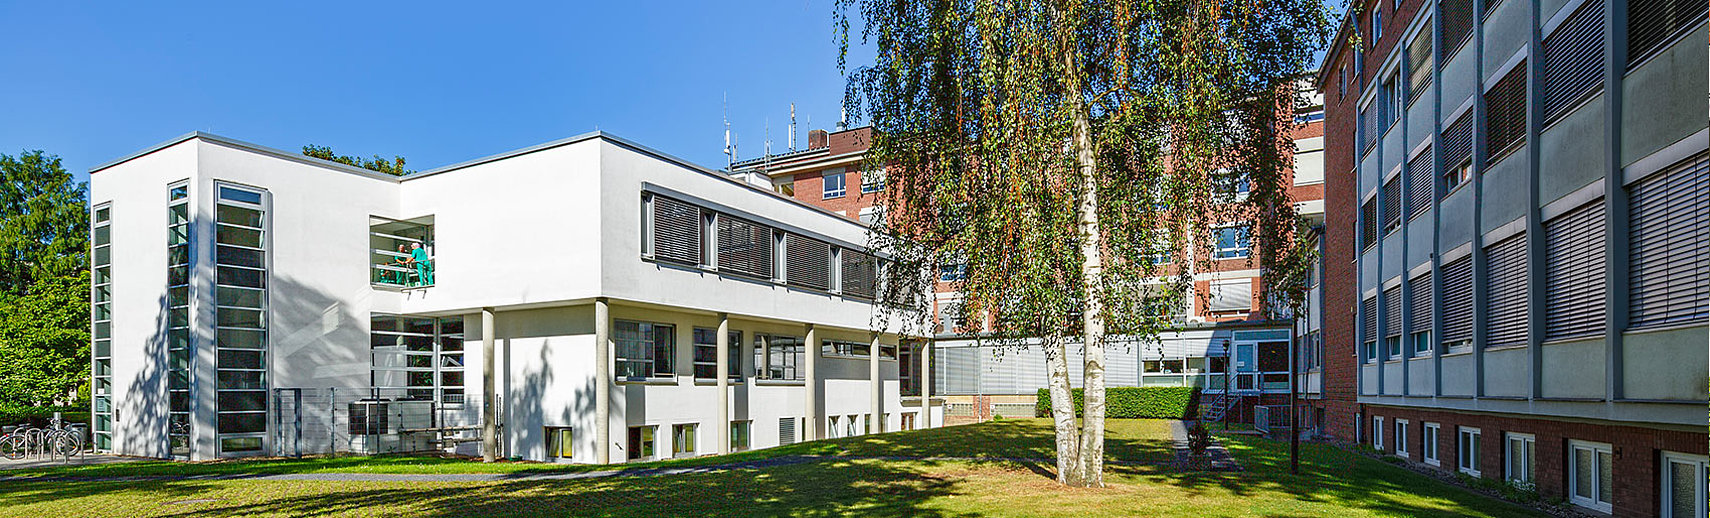 Ihr Kontakt zum Maria-Hilf-Krankenhauses in Bergheim bei Köln